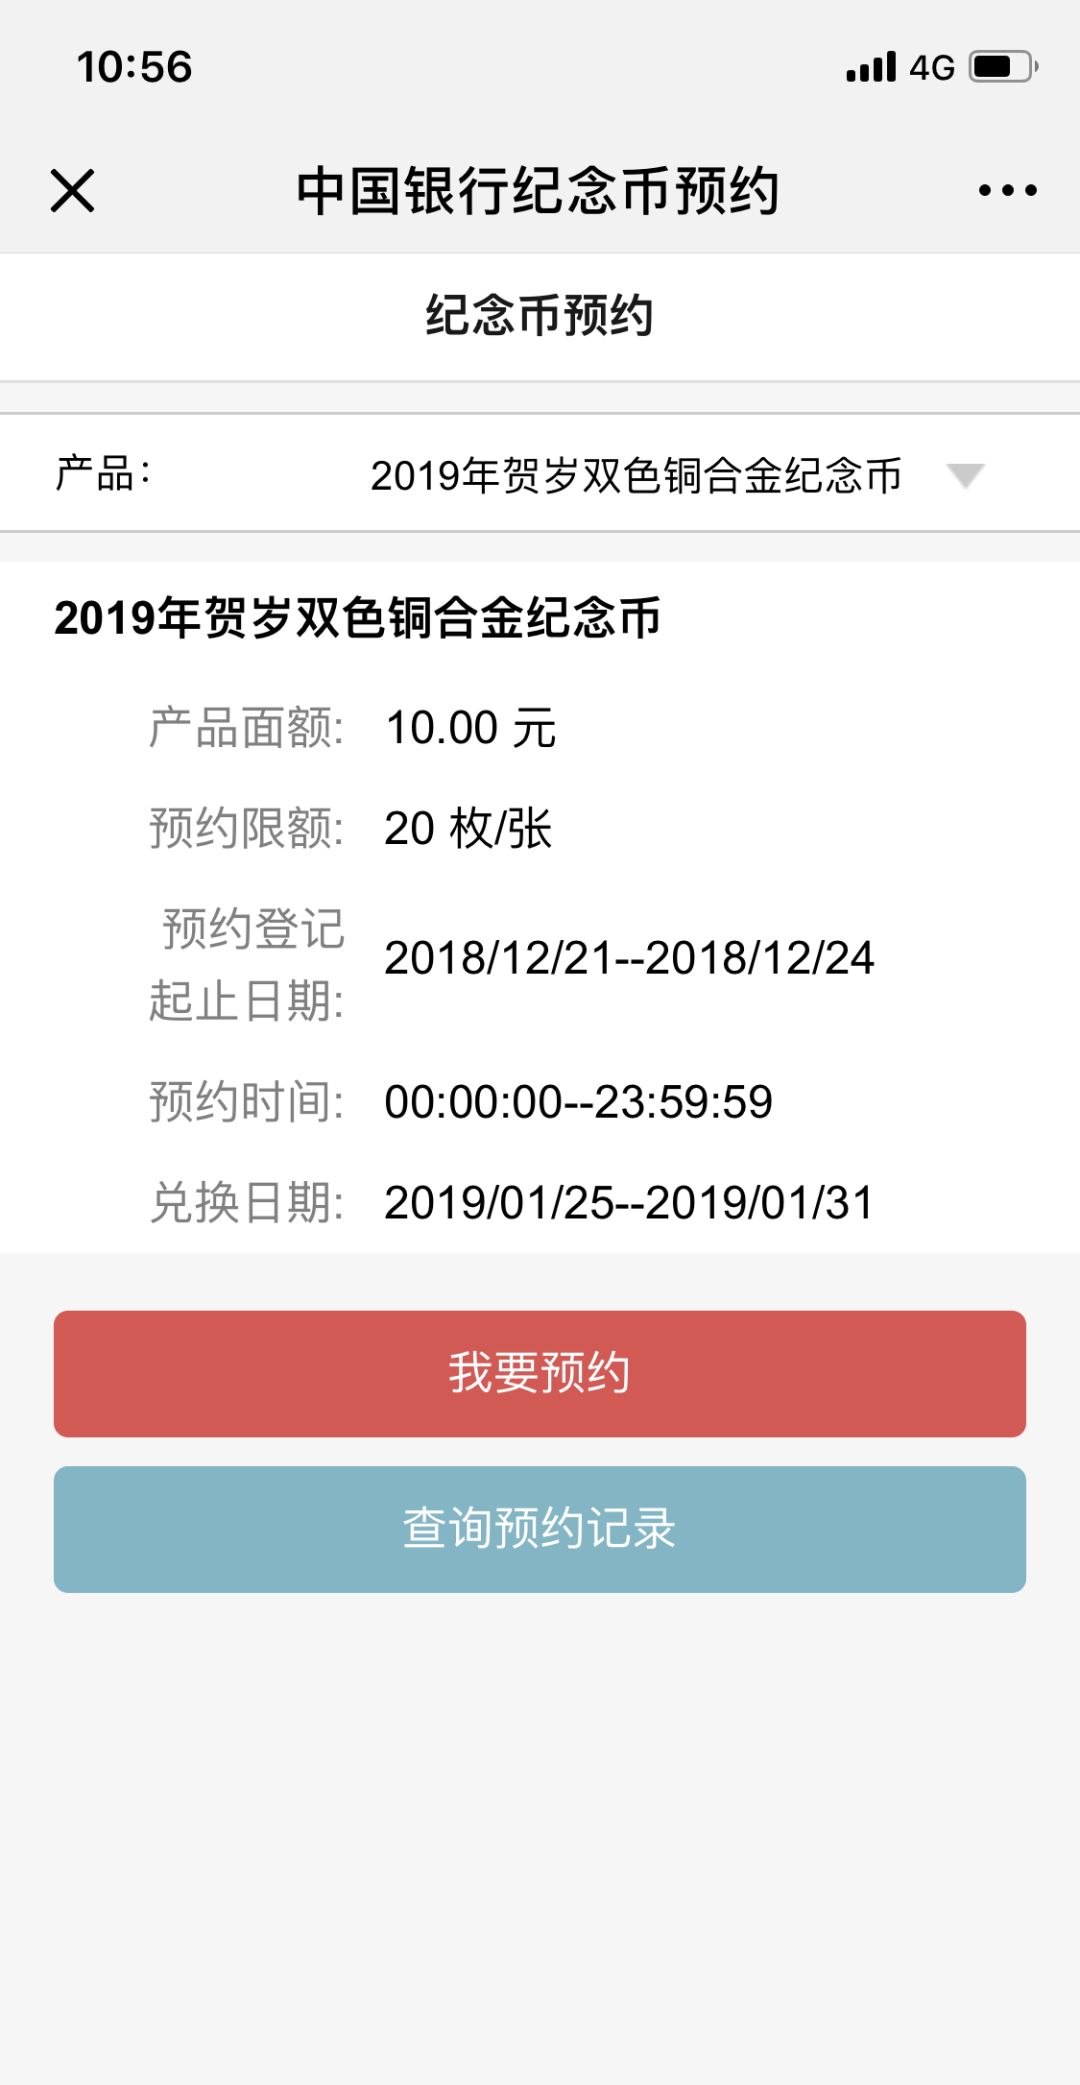 在中国银行官方网站(wwwboccn)查看重要公告中的预约发行信息